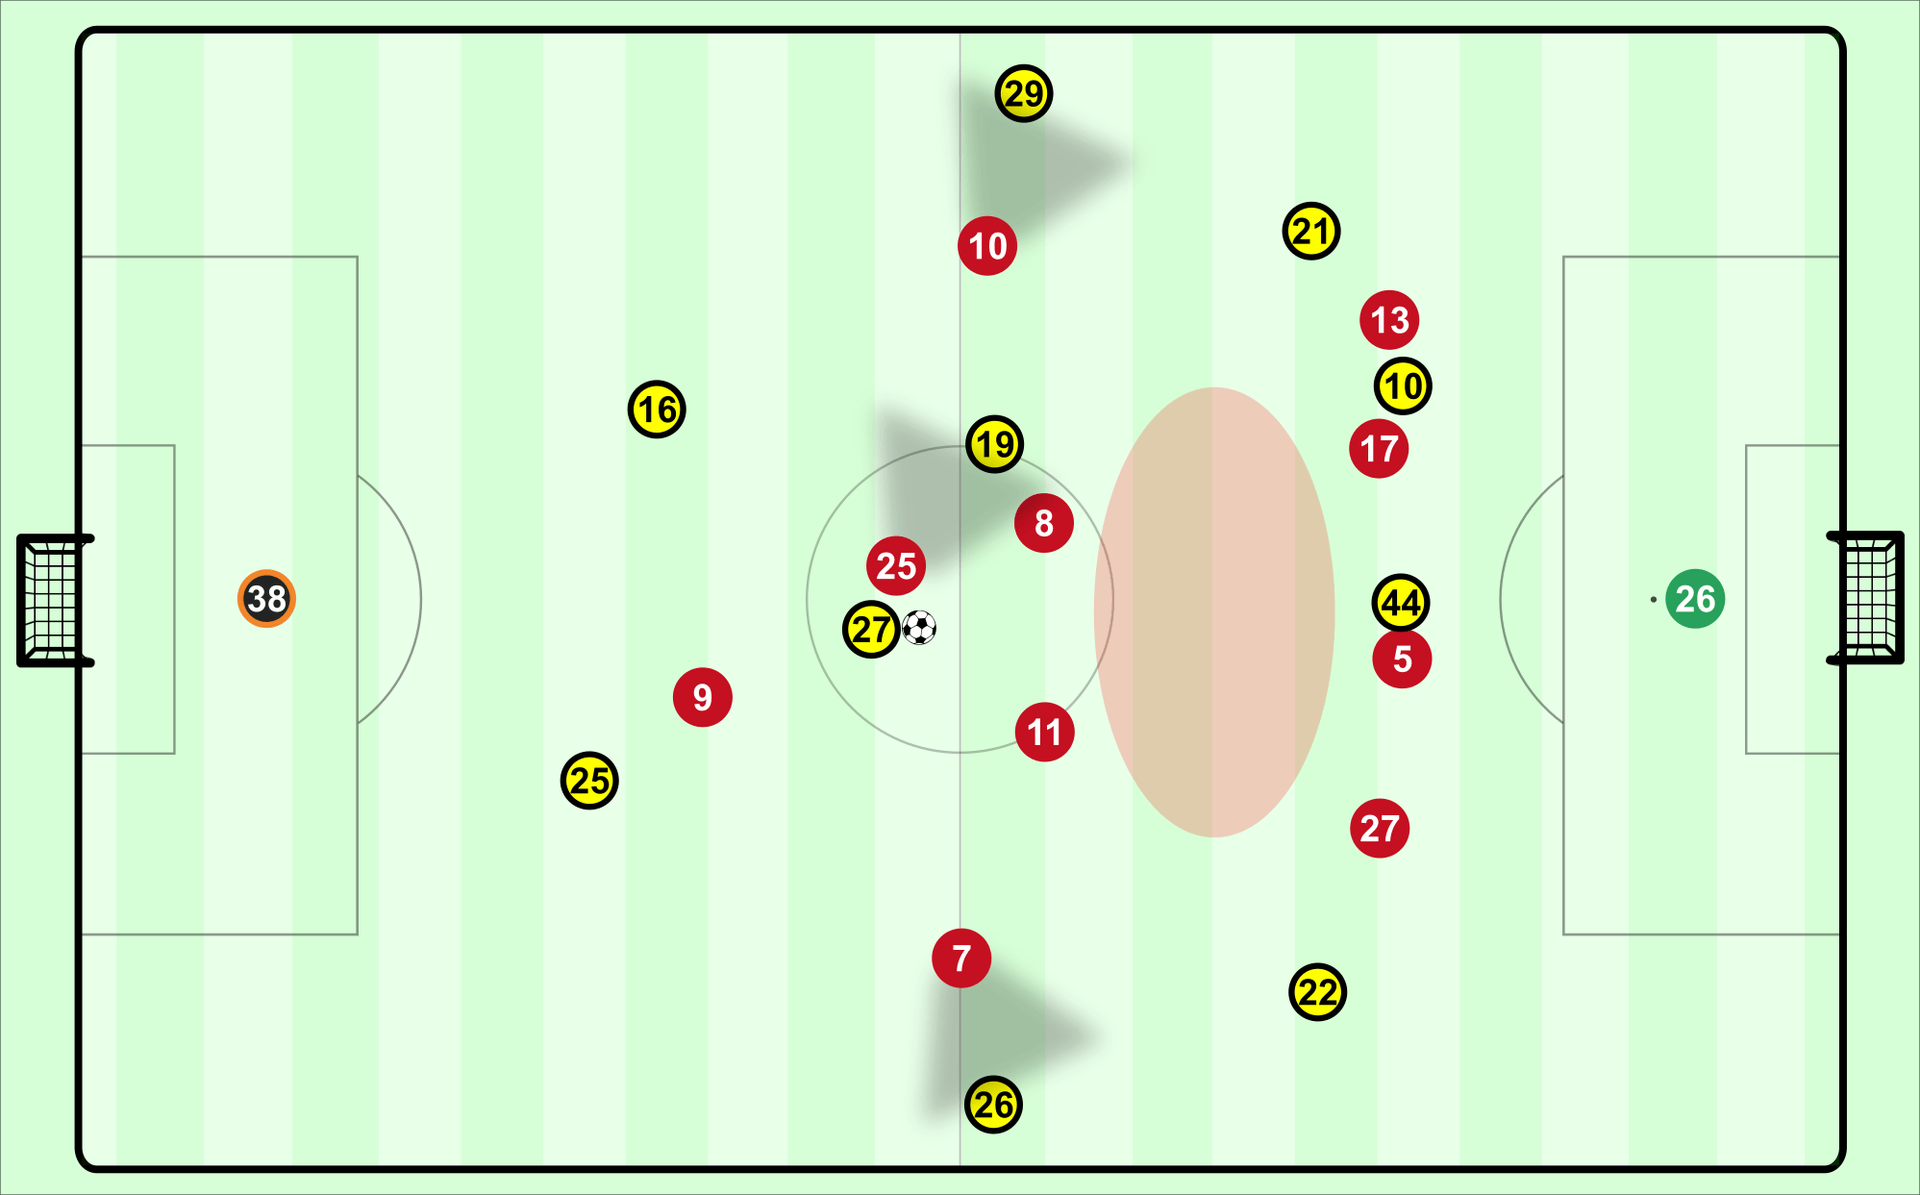 Einen Moment vor Gonzalo Castros Ballverlust, der das dritte Tor des FC Bayern einleitete, war Dortmund extrem schlecht gestaffelt. Castro hatte de facto keine Anspielstation.